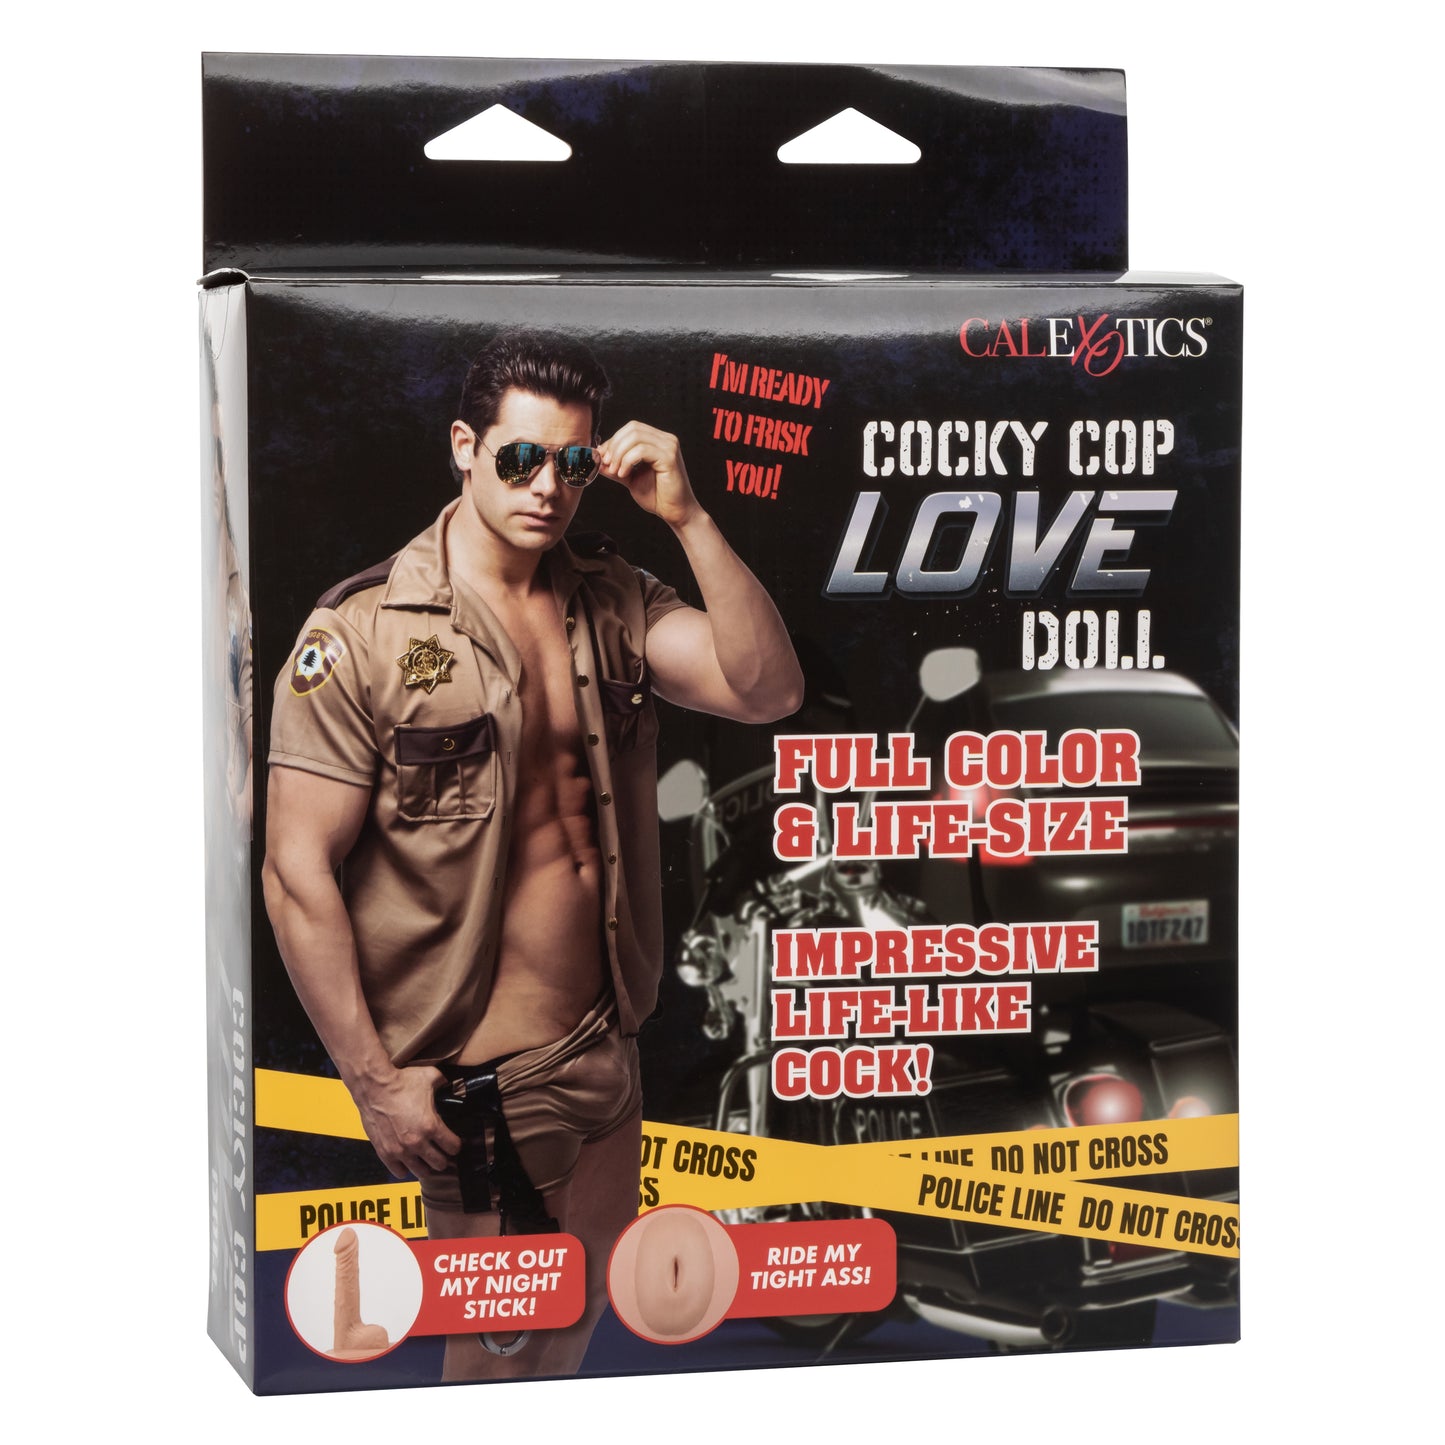 Cocky Cop Love Doll SE1964503